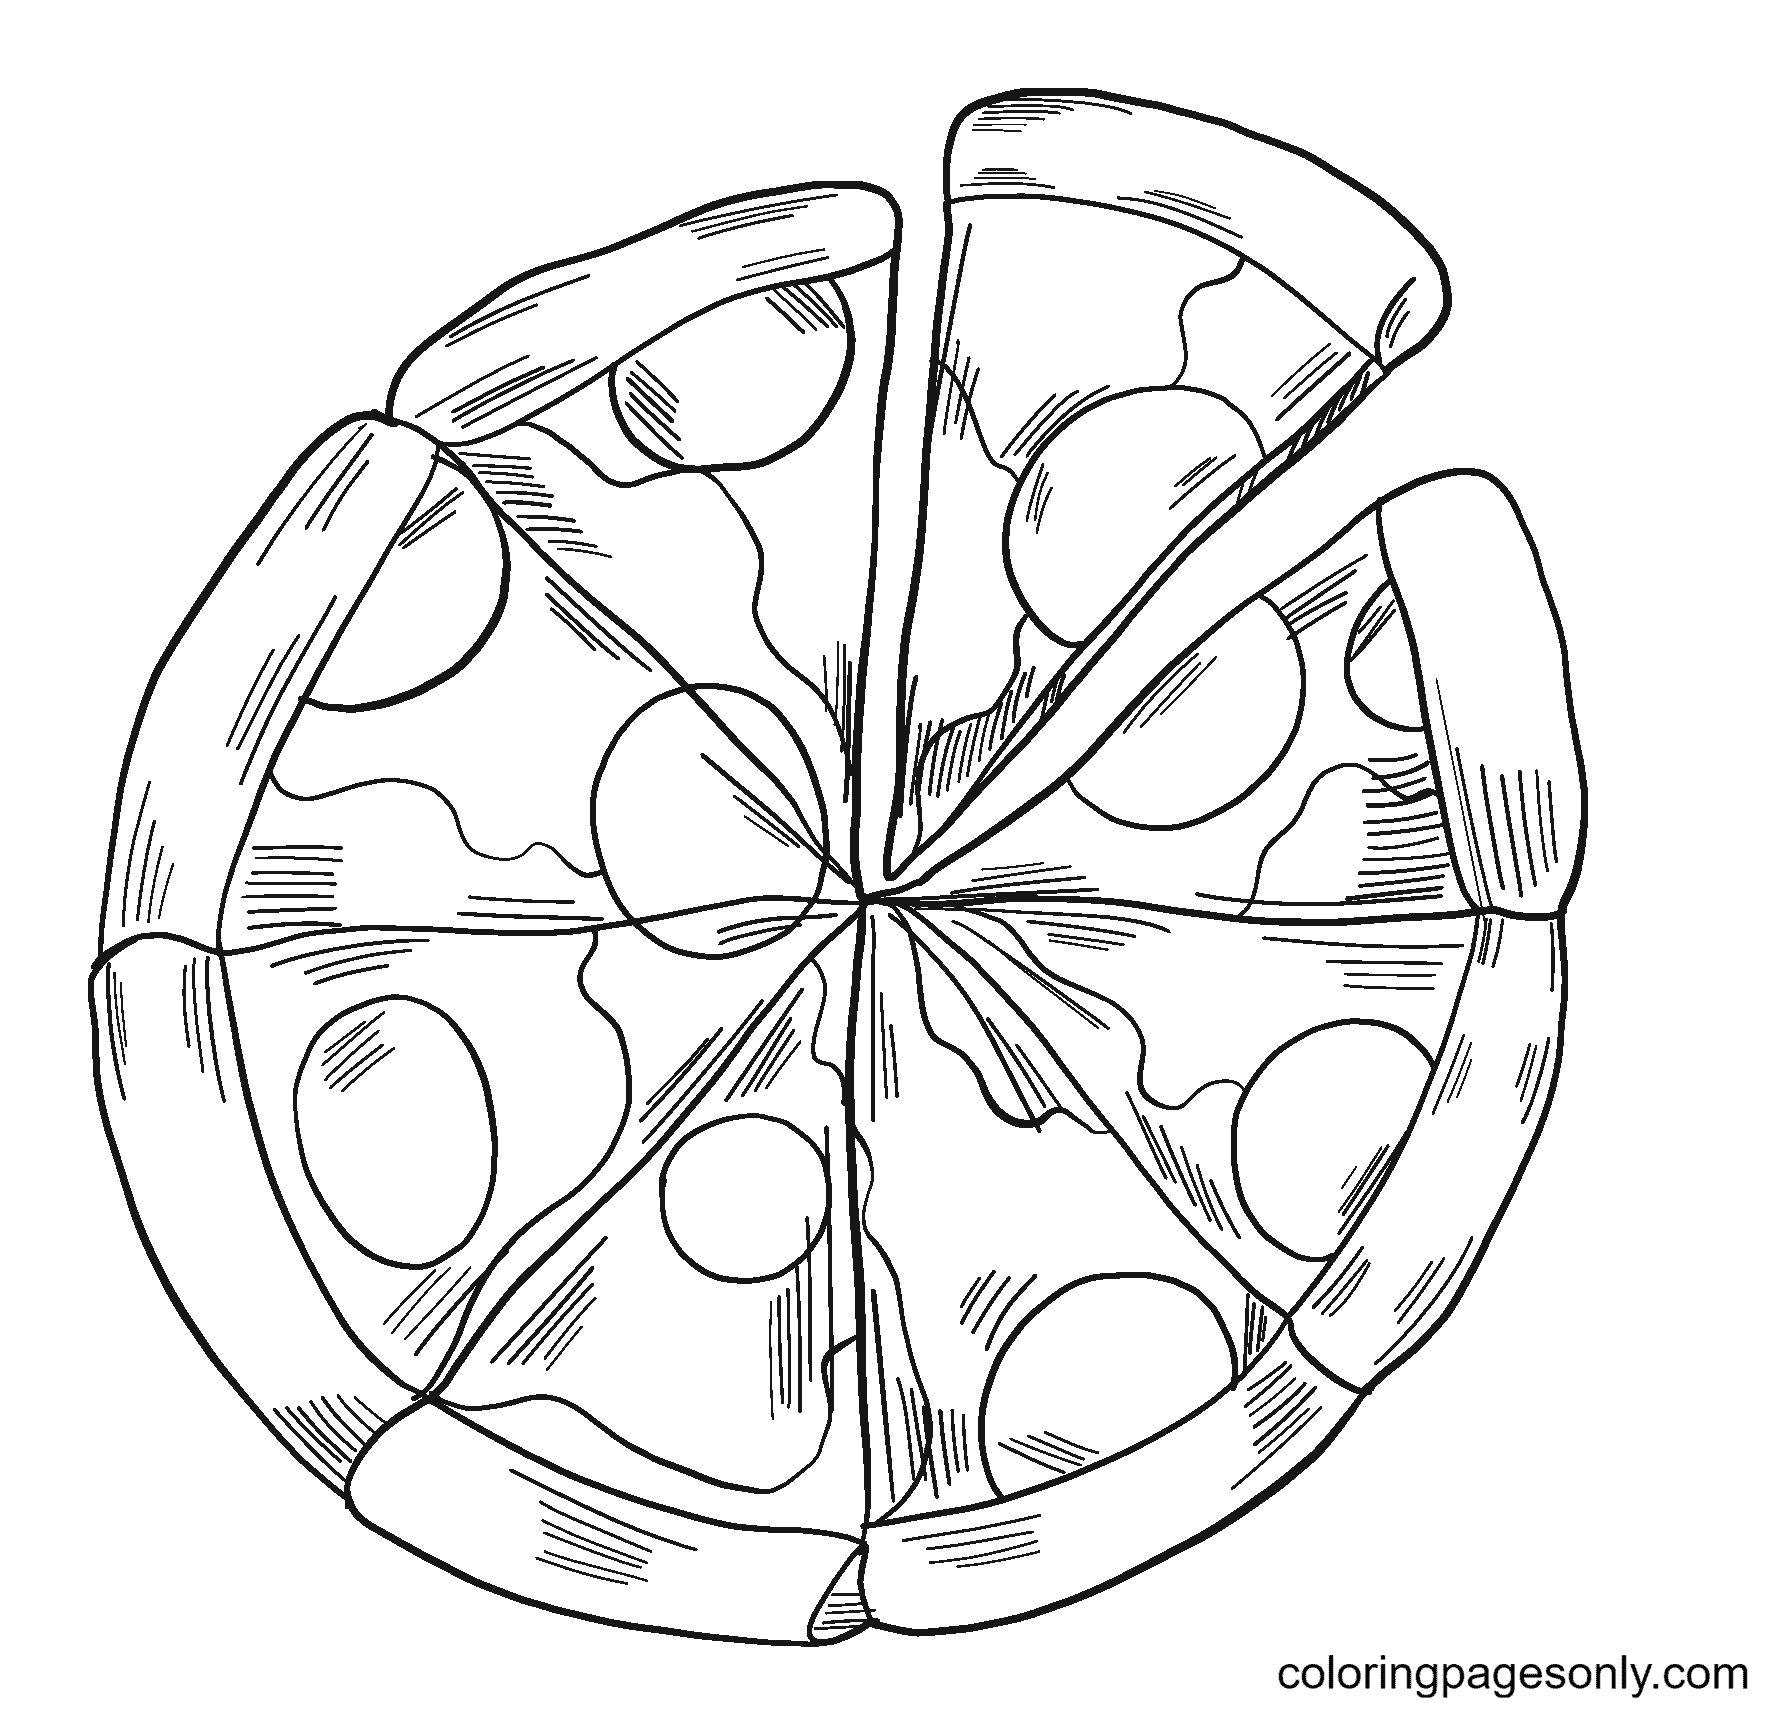 Пицца нарезанная на кусочки из Pizza